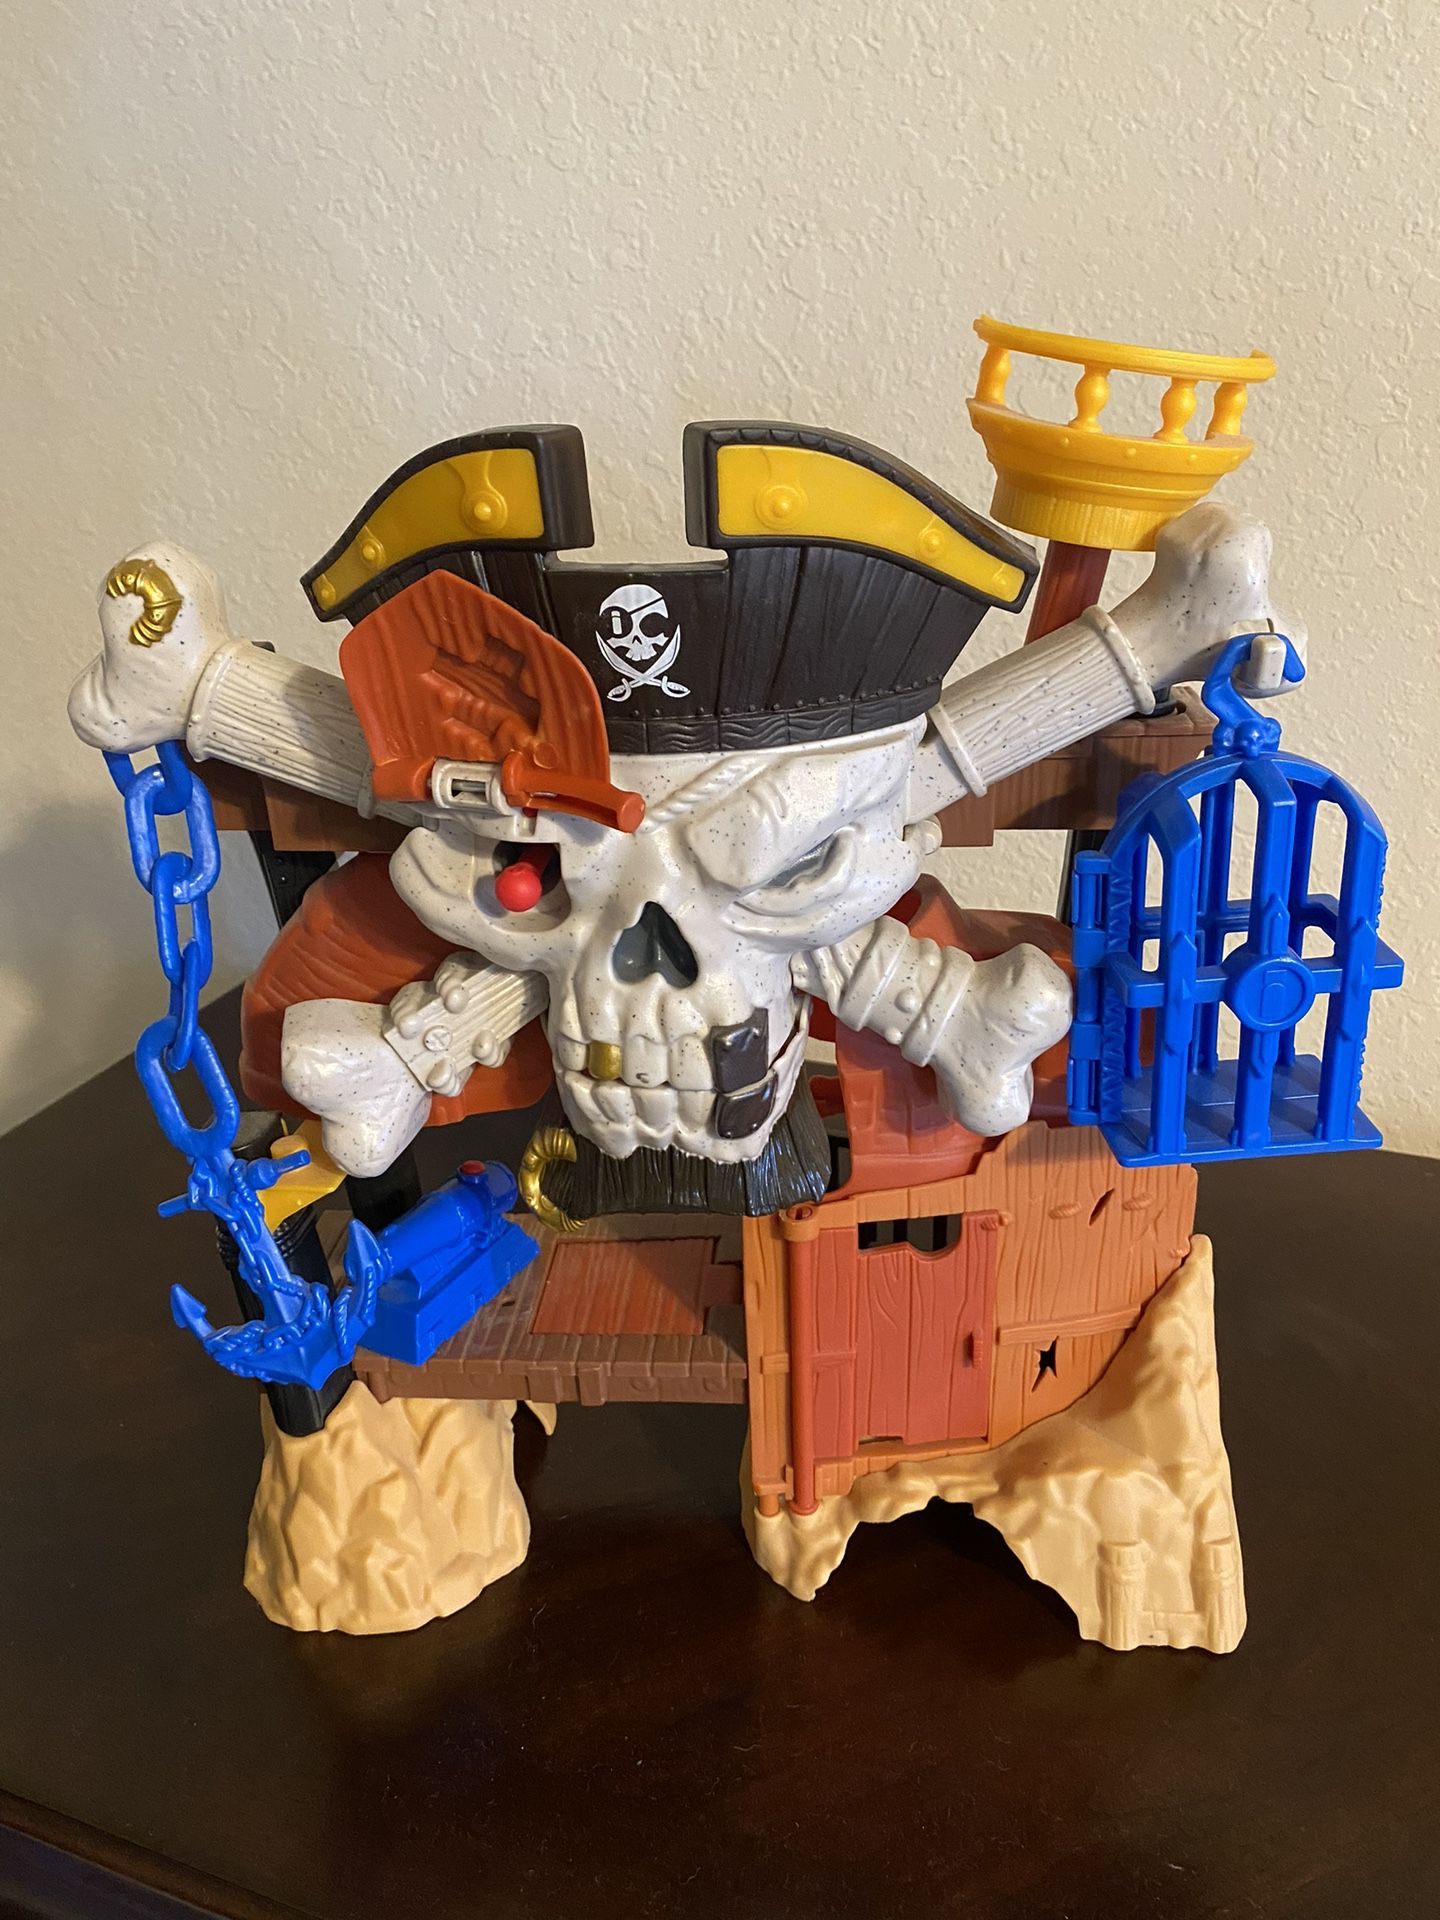 Pirate playhouse